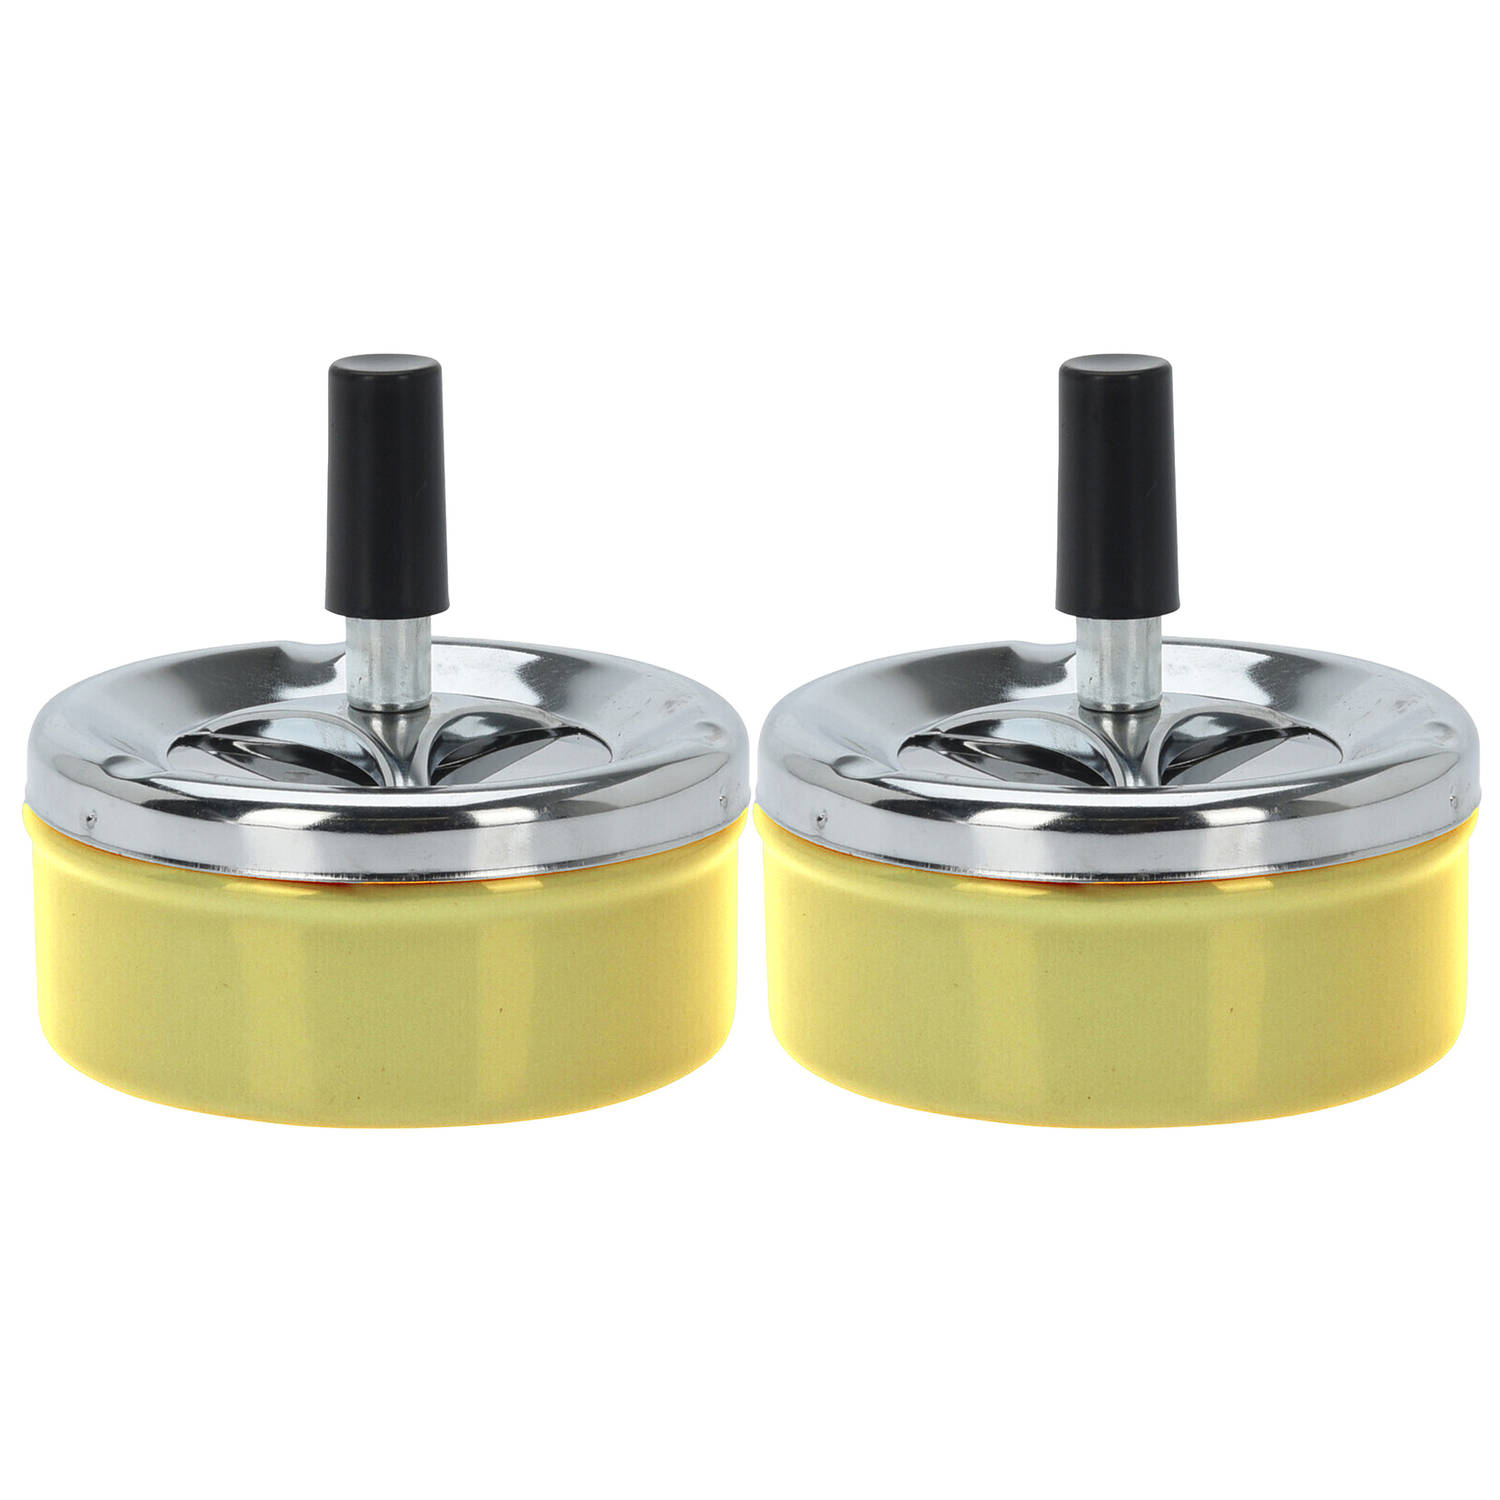 Set van 2x stuks ronde draaiasbak/drukasbak metaal 10 cm geel voor binnen/buiten - Asbakken